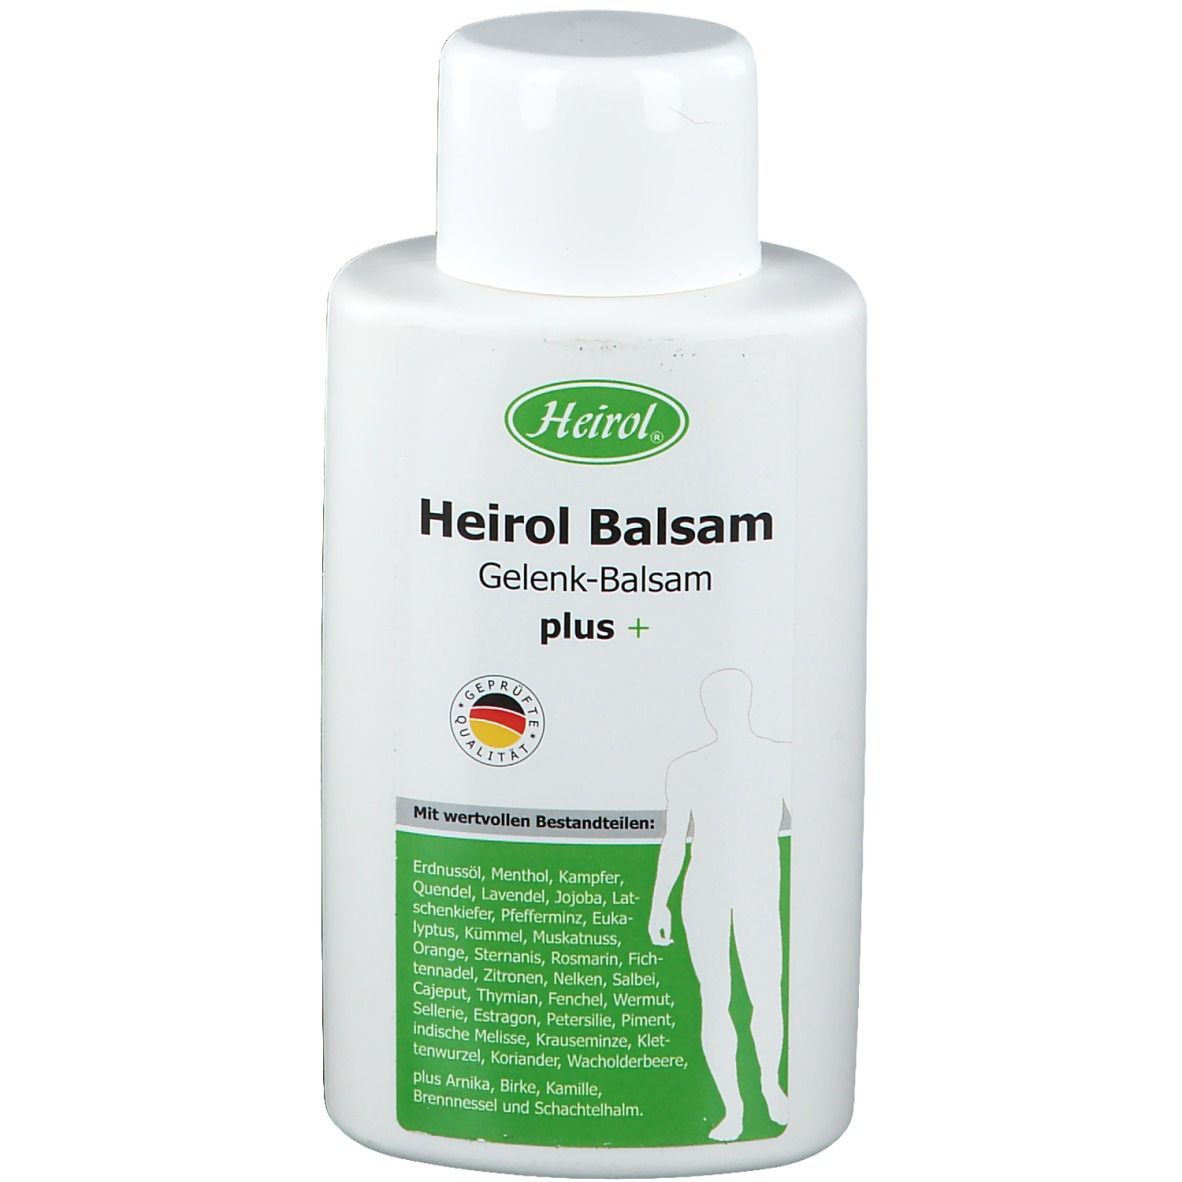 Heirol® Balsam Gelenk-Balsam plus+ Universal